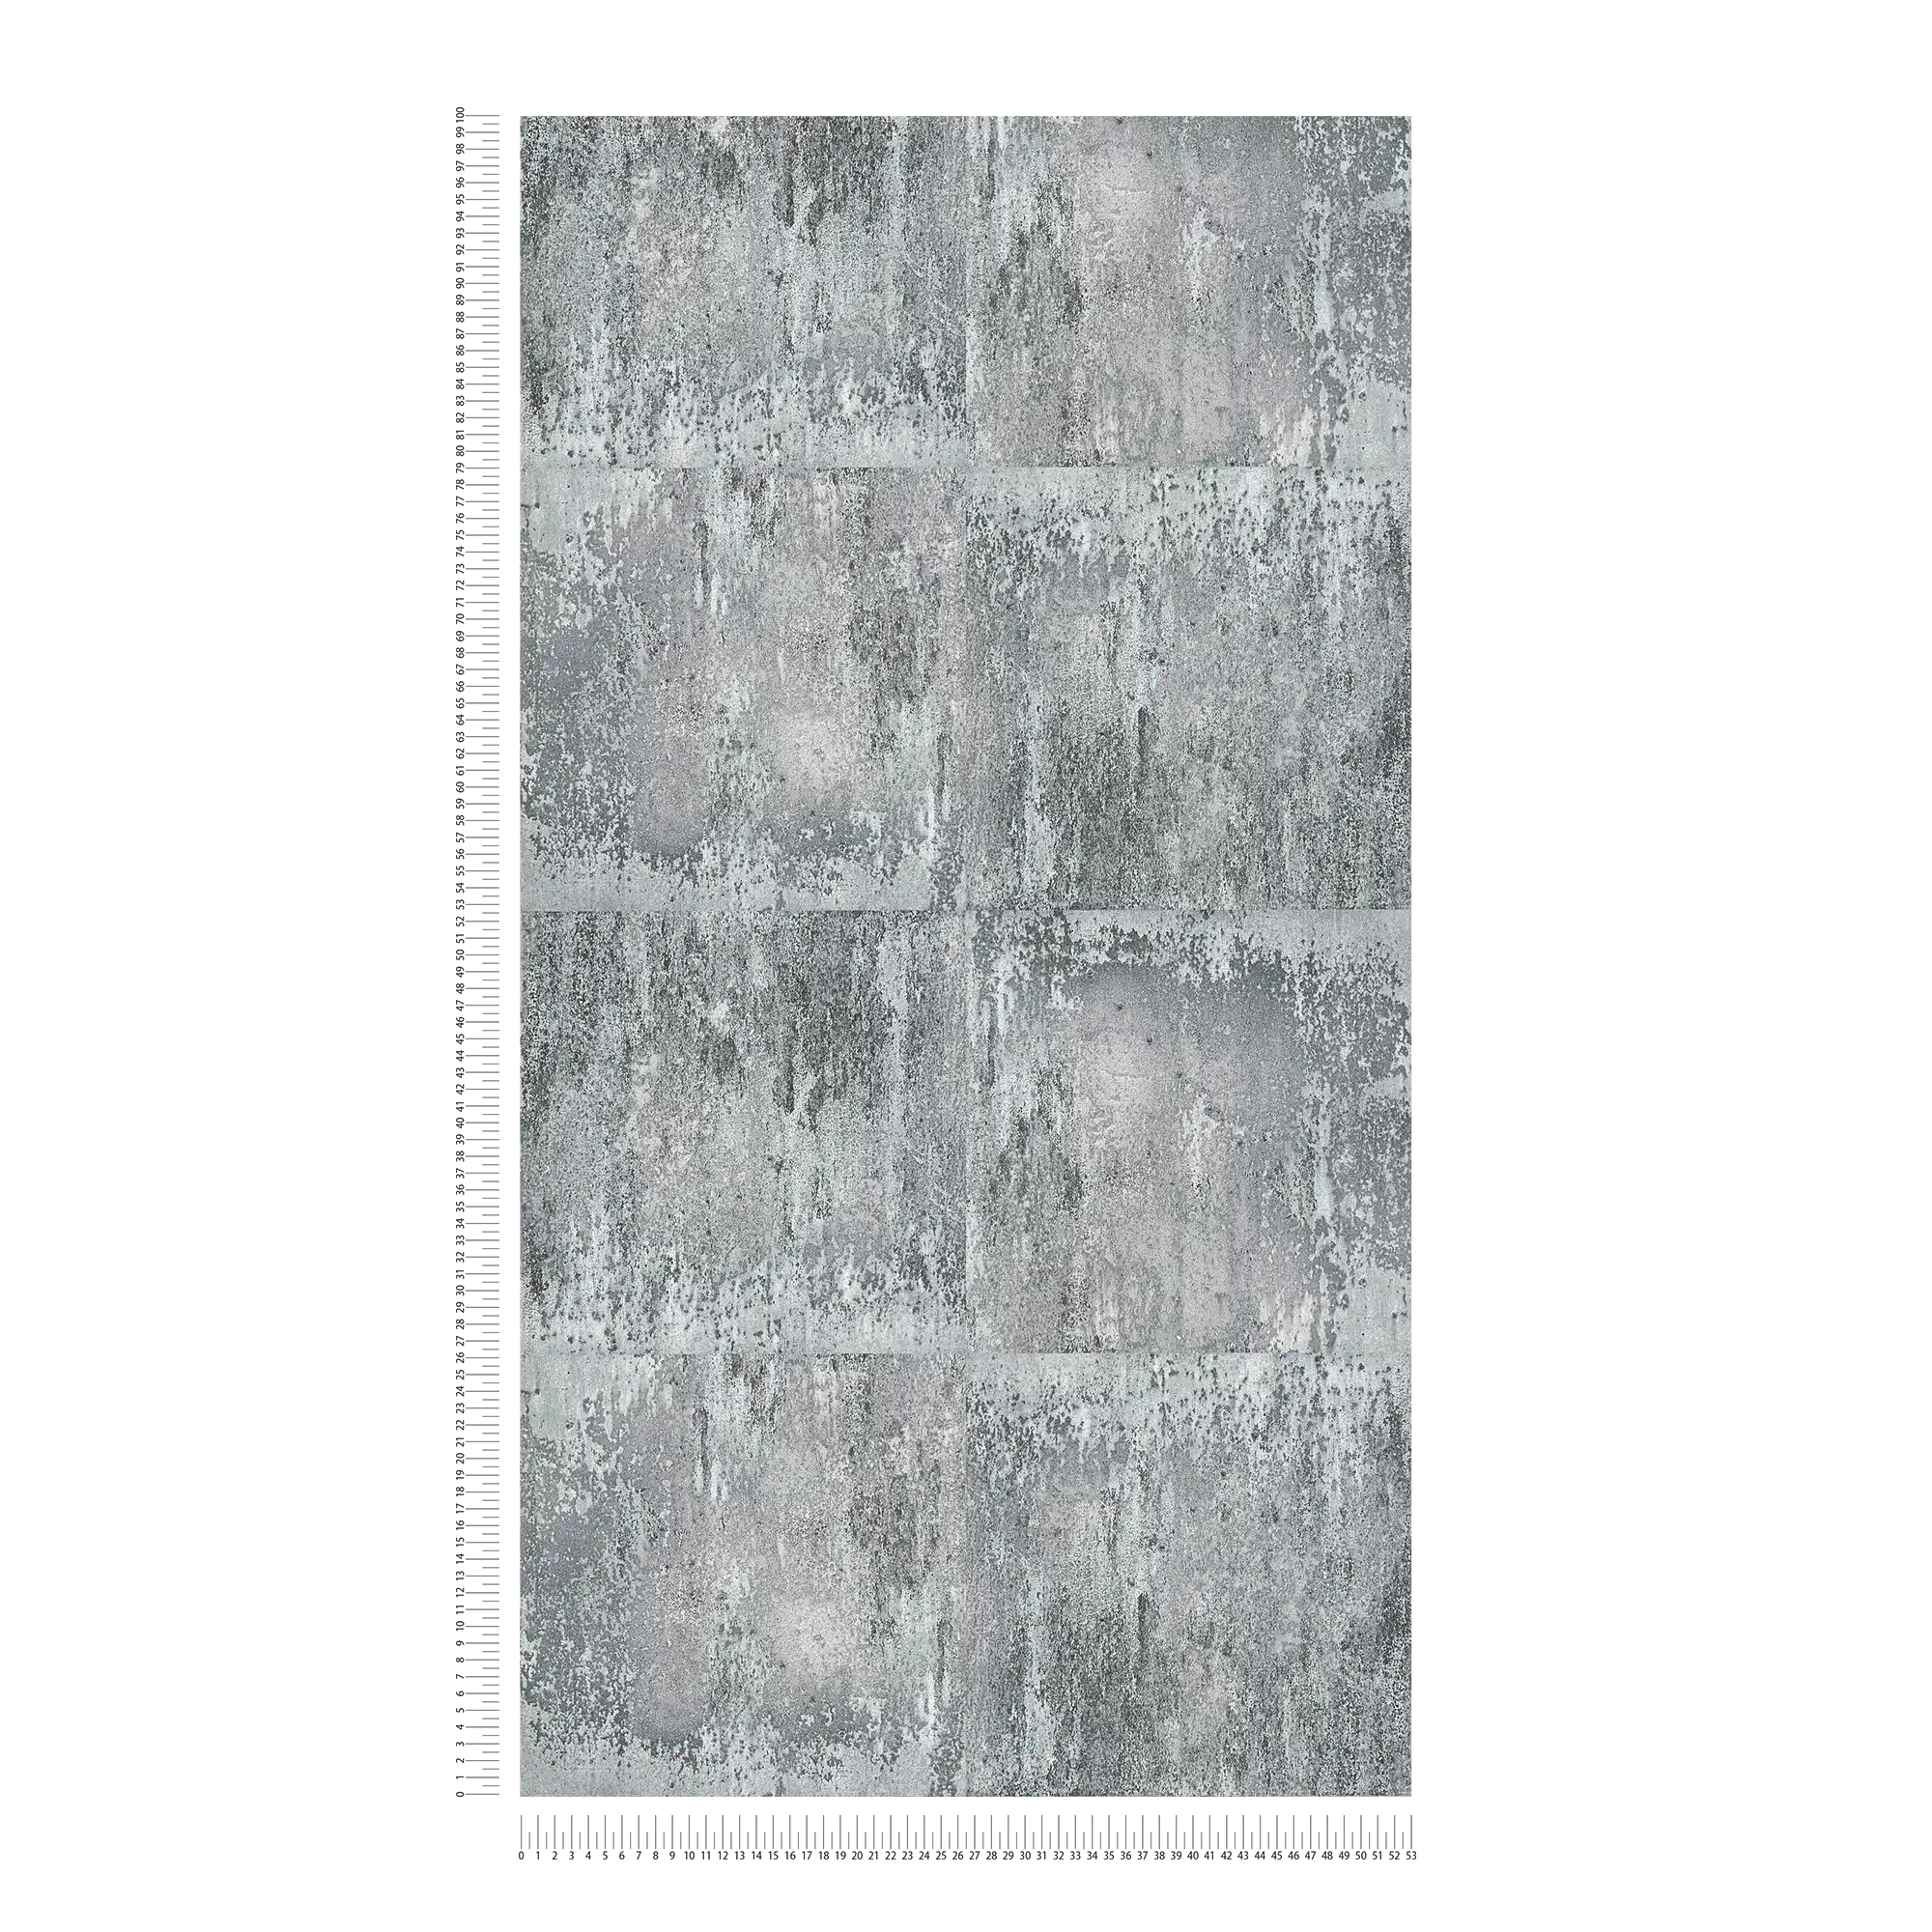             Papier peint aspect métal rustique & motif rugueux - gris, noir, argenté
        